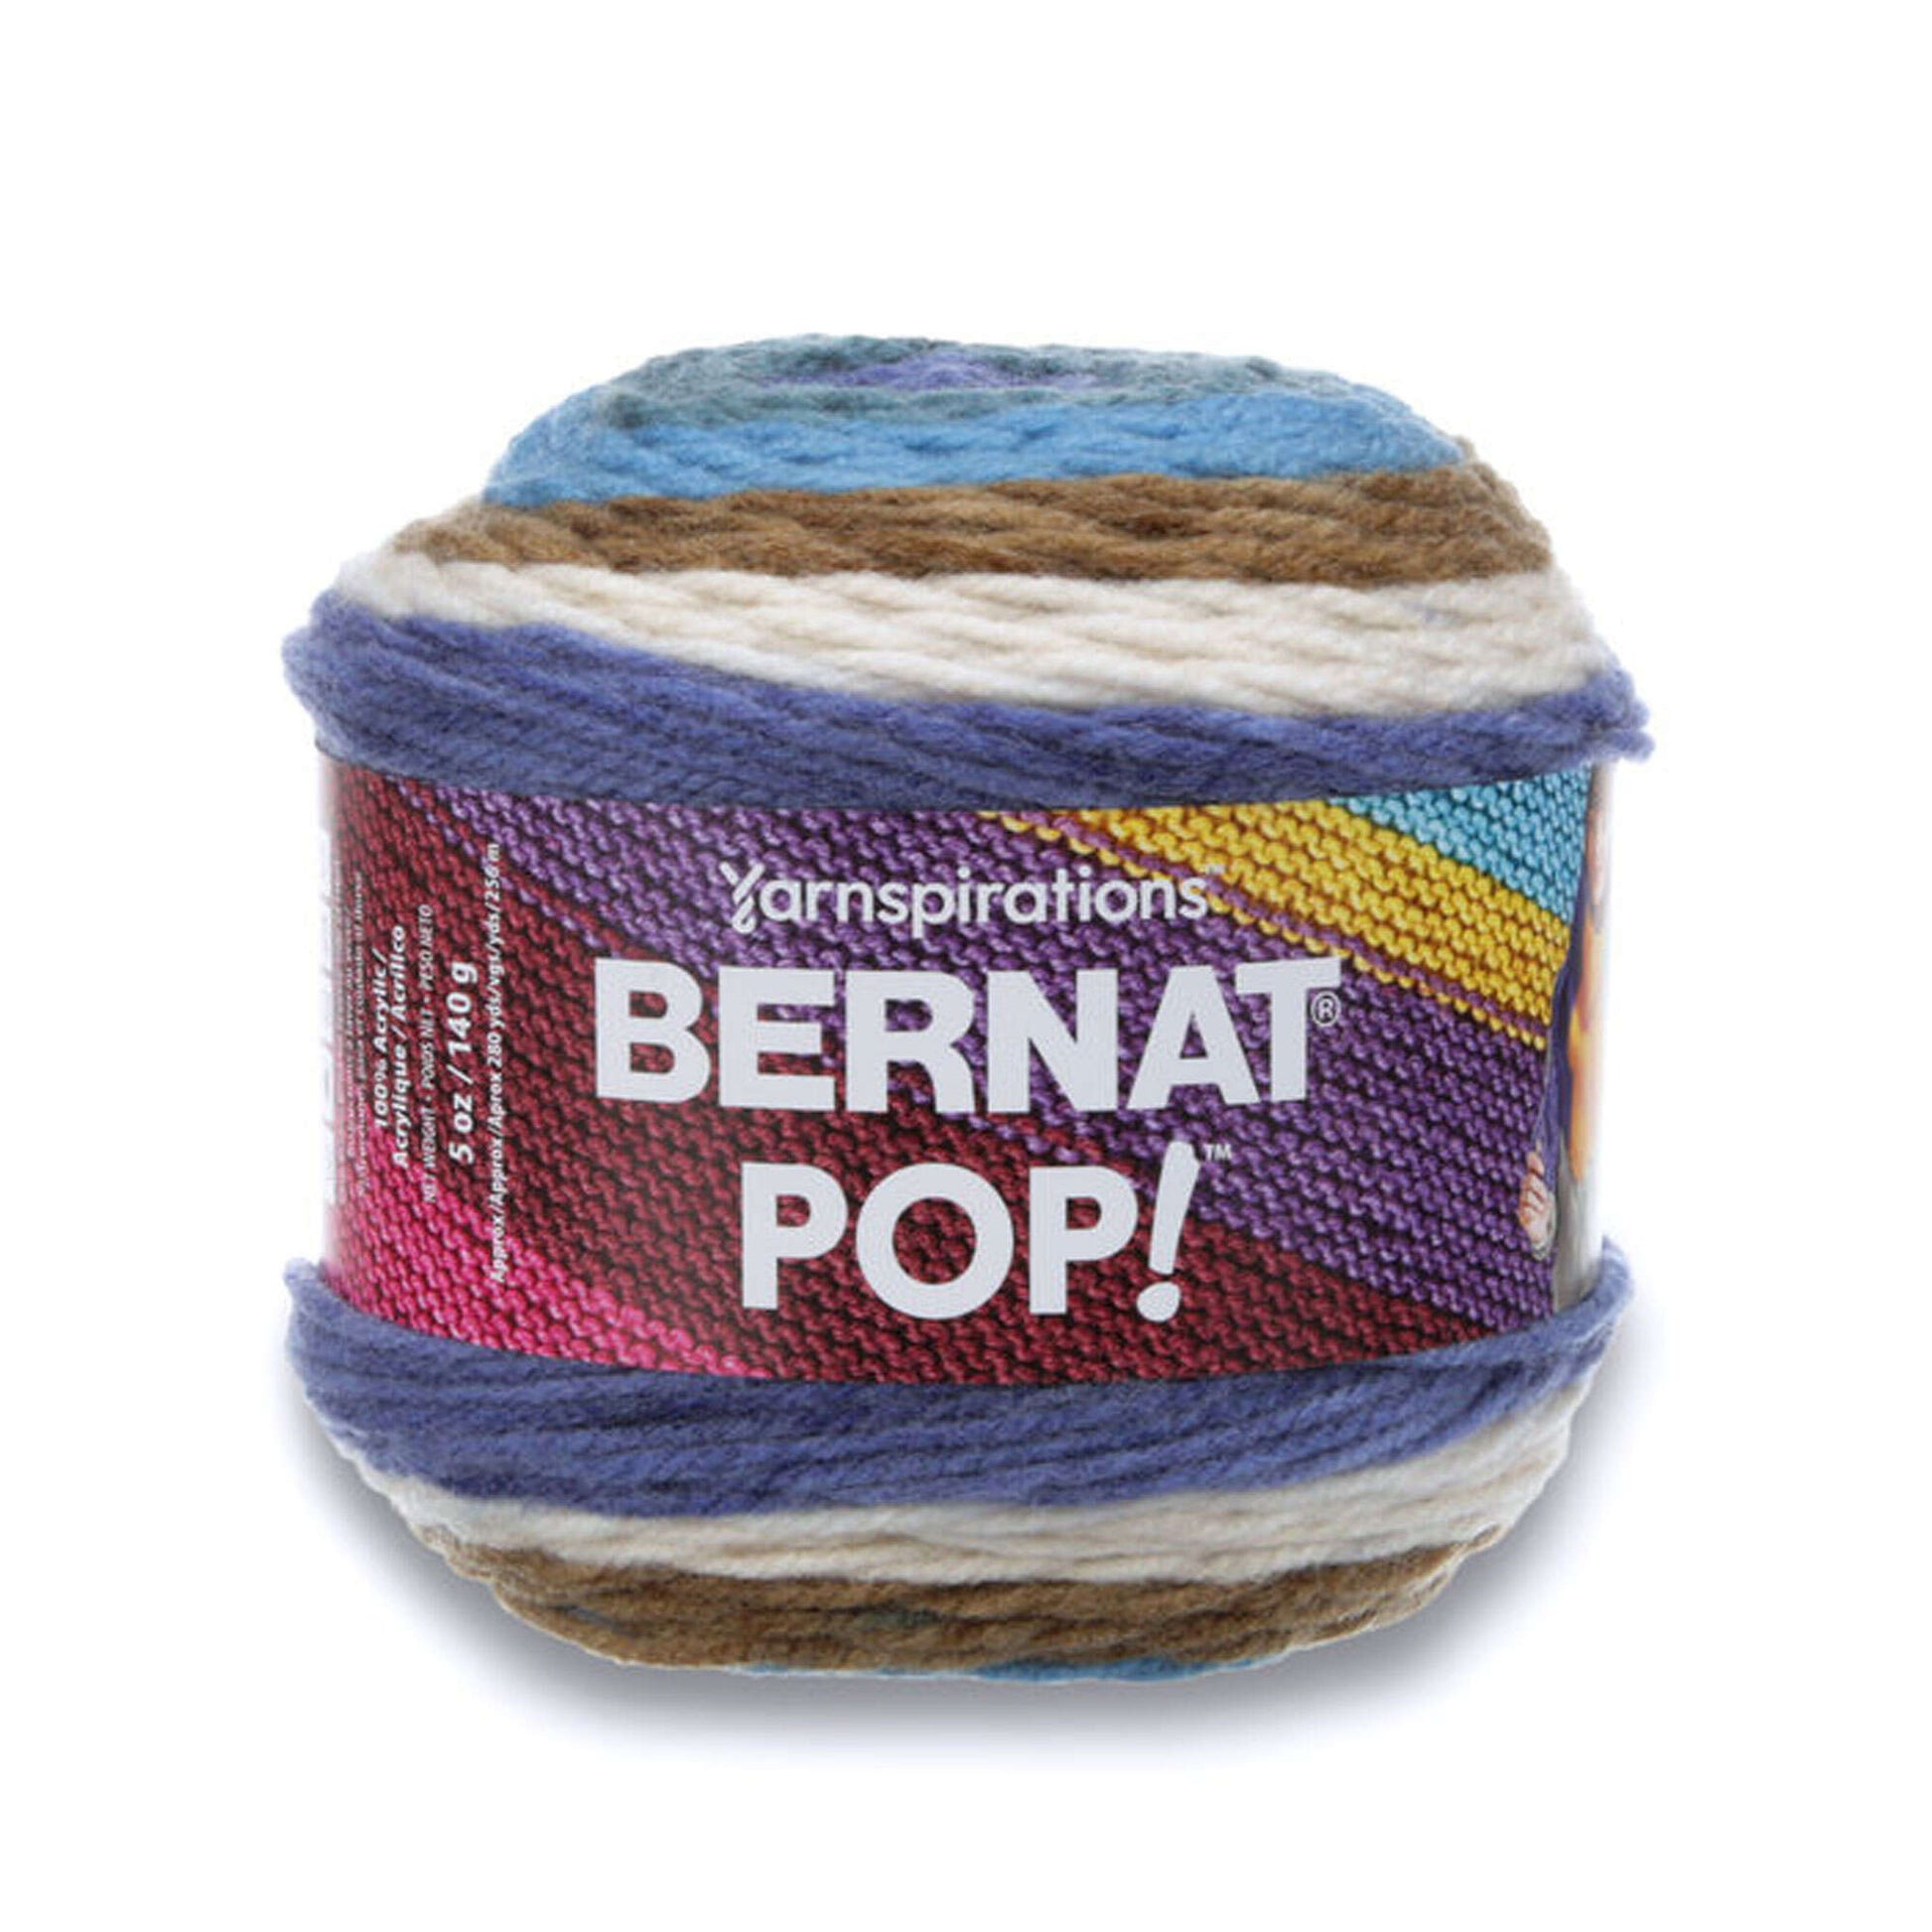 Subjektiv Revolutionerende En skønne dag Bernat Pop! Yarn - Clearance Shades* | Yarnspirations